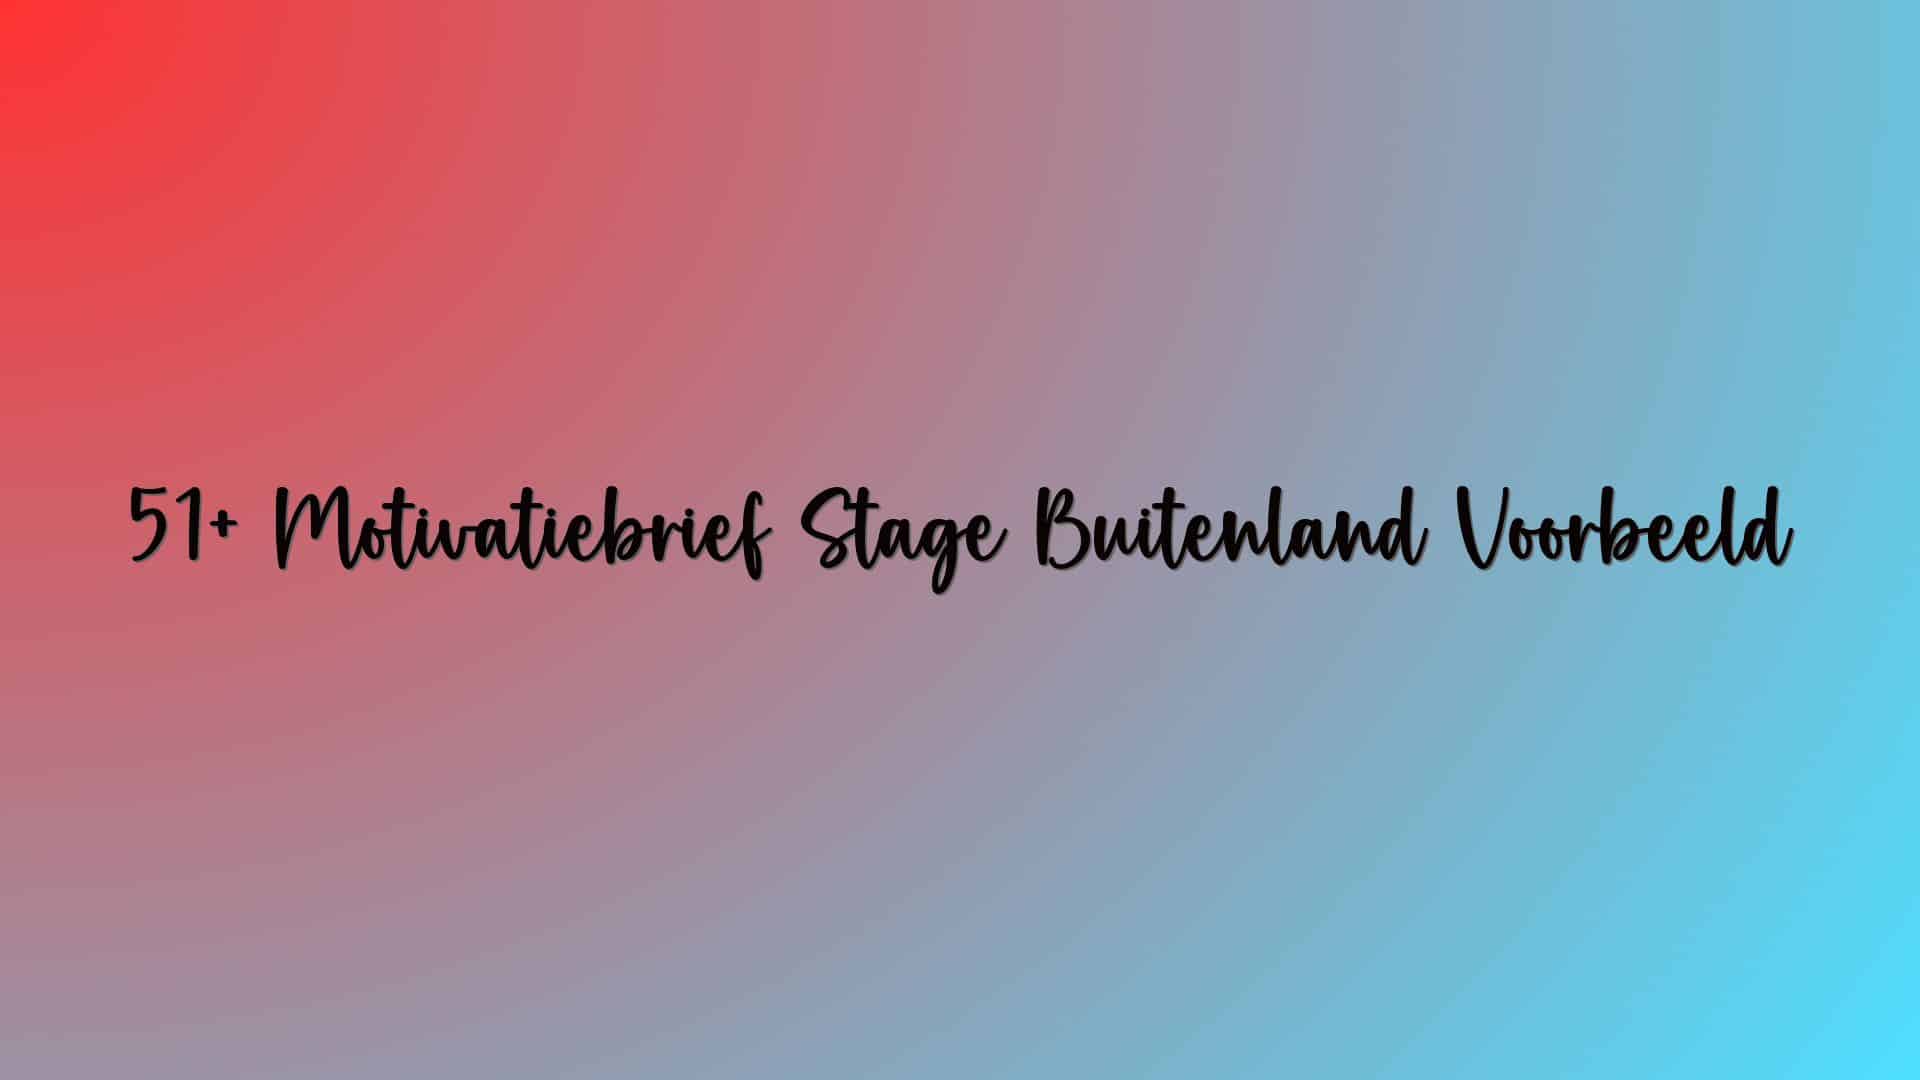 51+ Motivatiebrief Stage Buitenland Voorbeeld